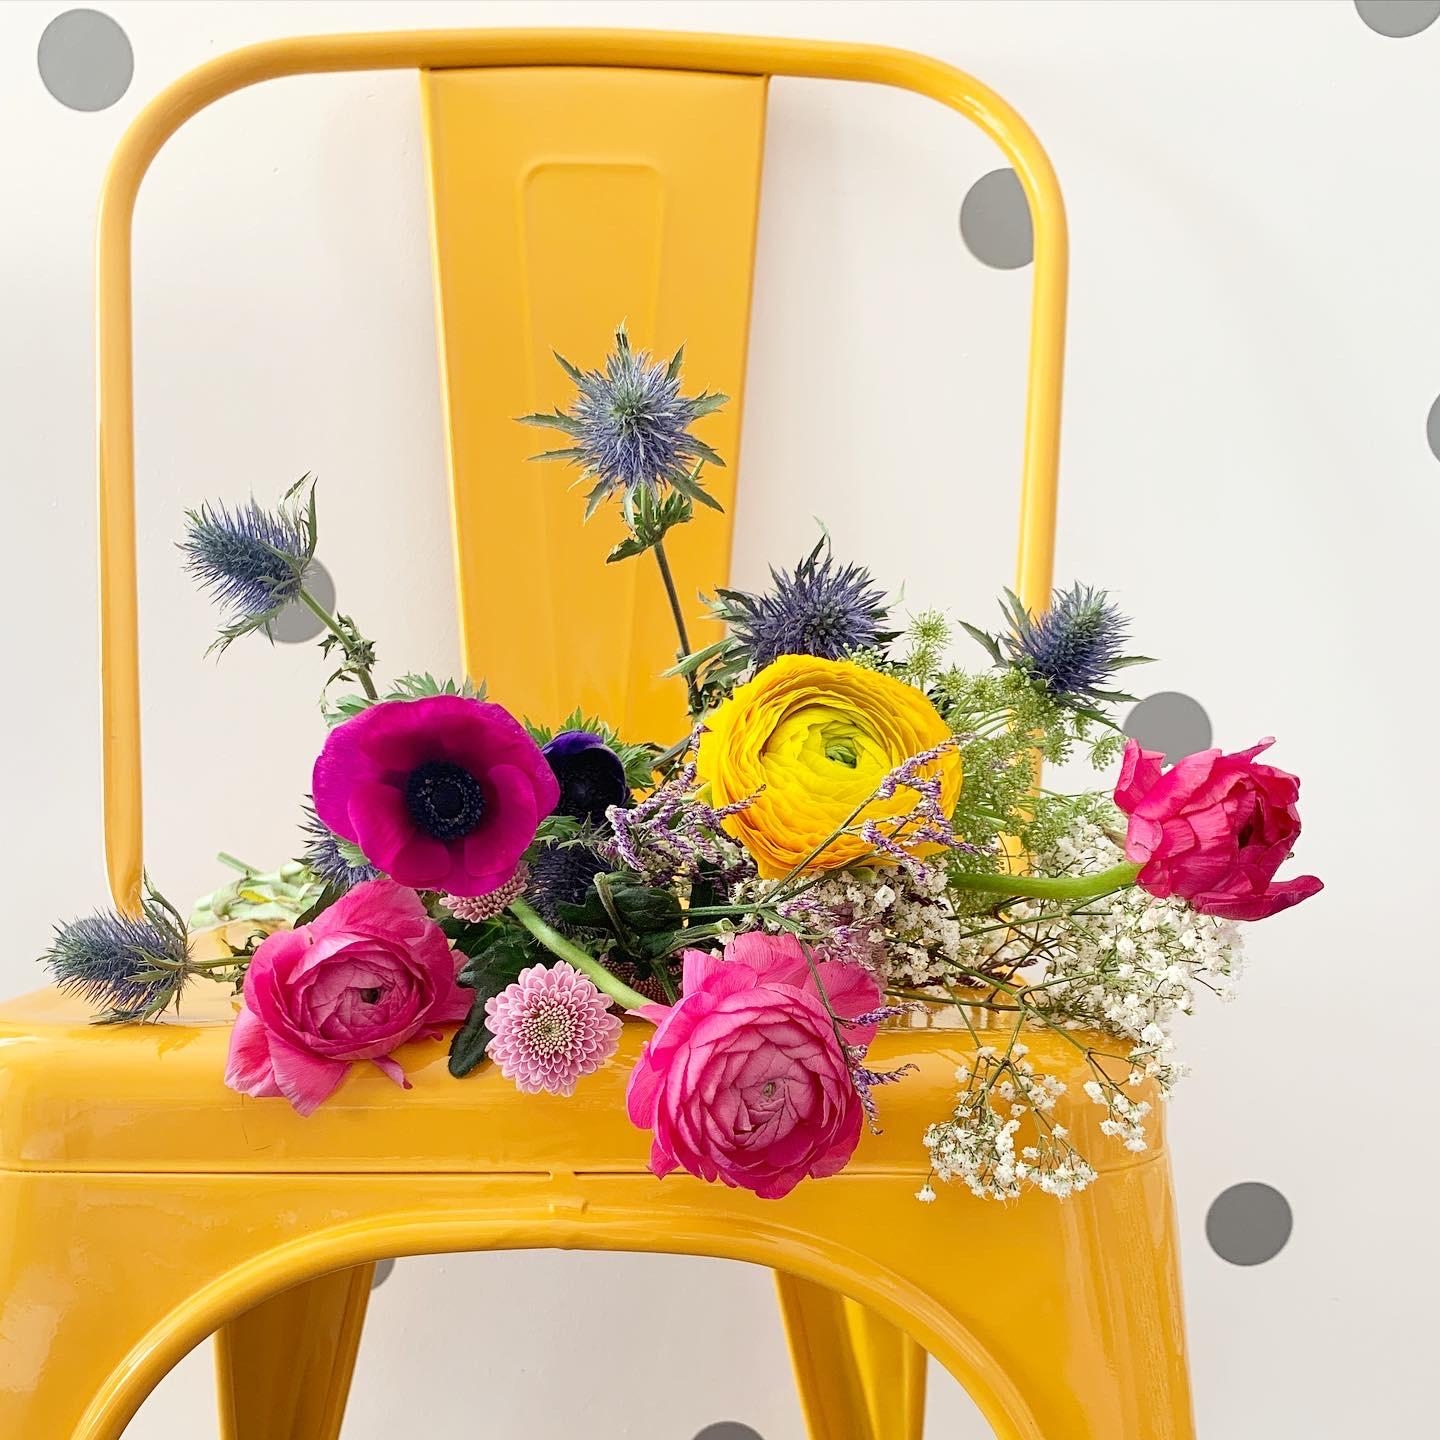 #flowerpower #sundayvibes #blumenliebe #gelb #colorfulhome #detailverliebt